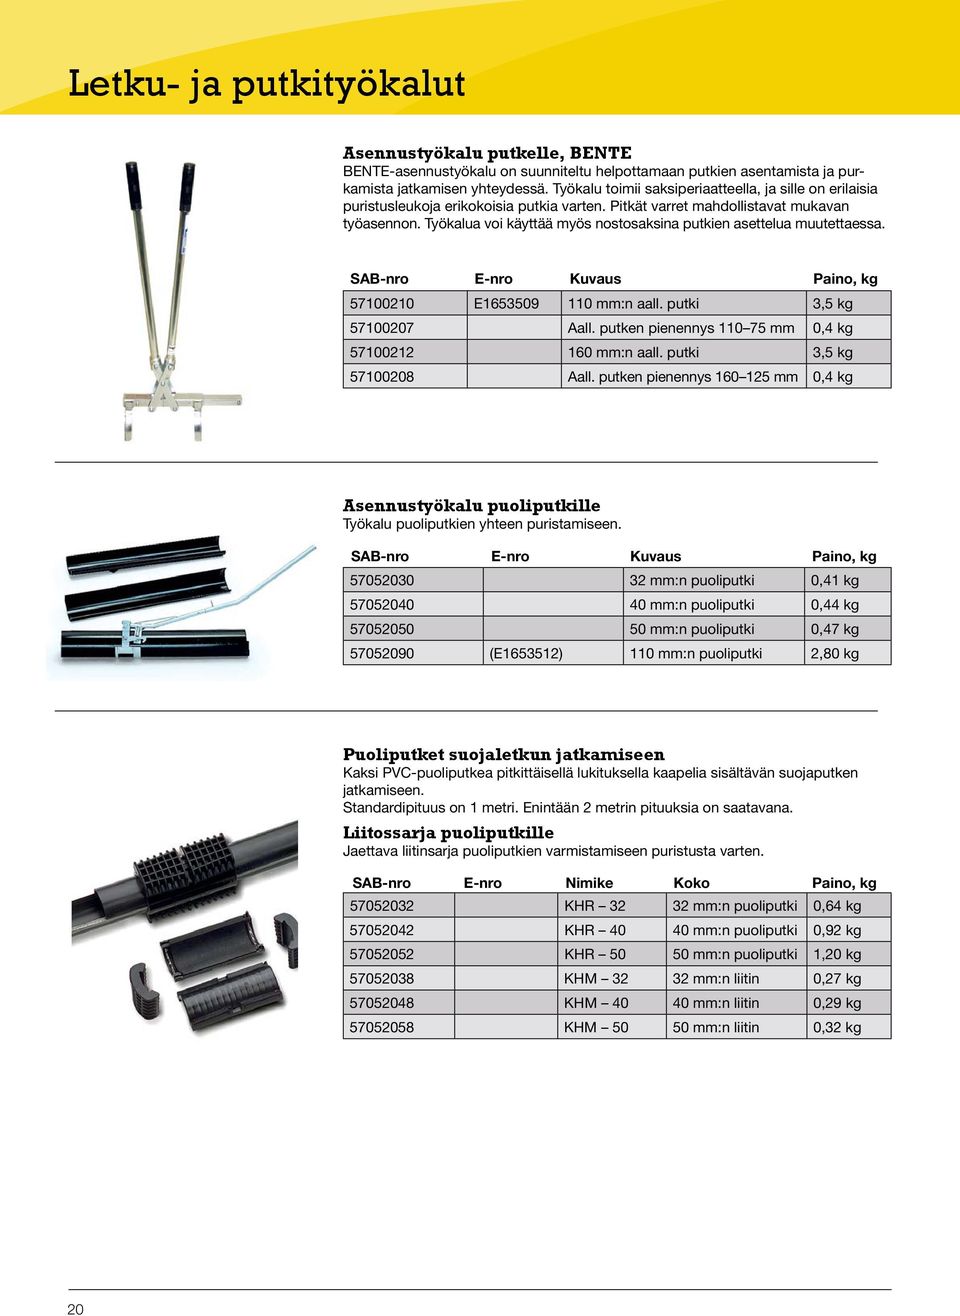 Työkalua voi käyttää myös nostosaksina putkien asettelua muutettaessa. SAB-nro E-nro Kuvaus Paino, kg 57100210 E1653509 110 mm:n aall. putki 3,5 kg 57100207 Aall.